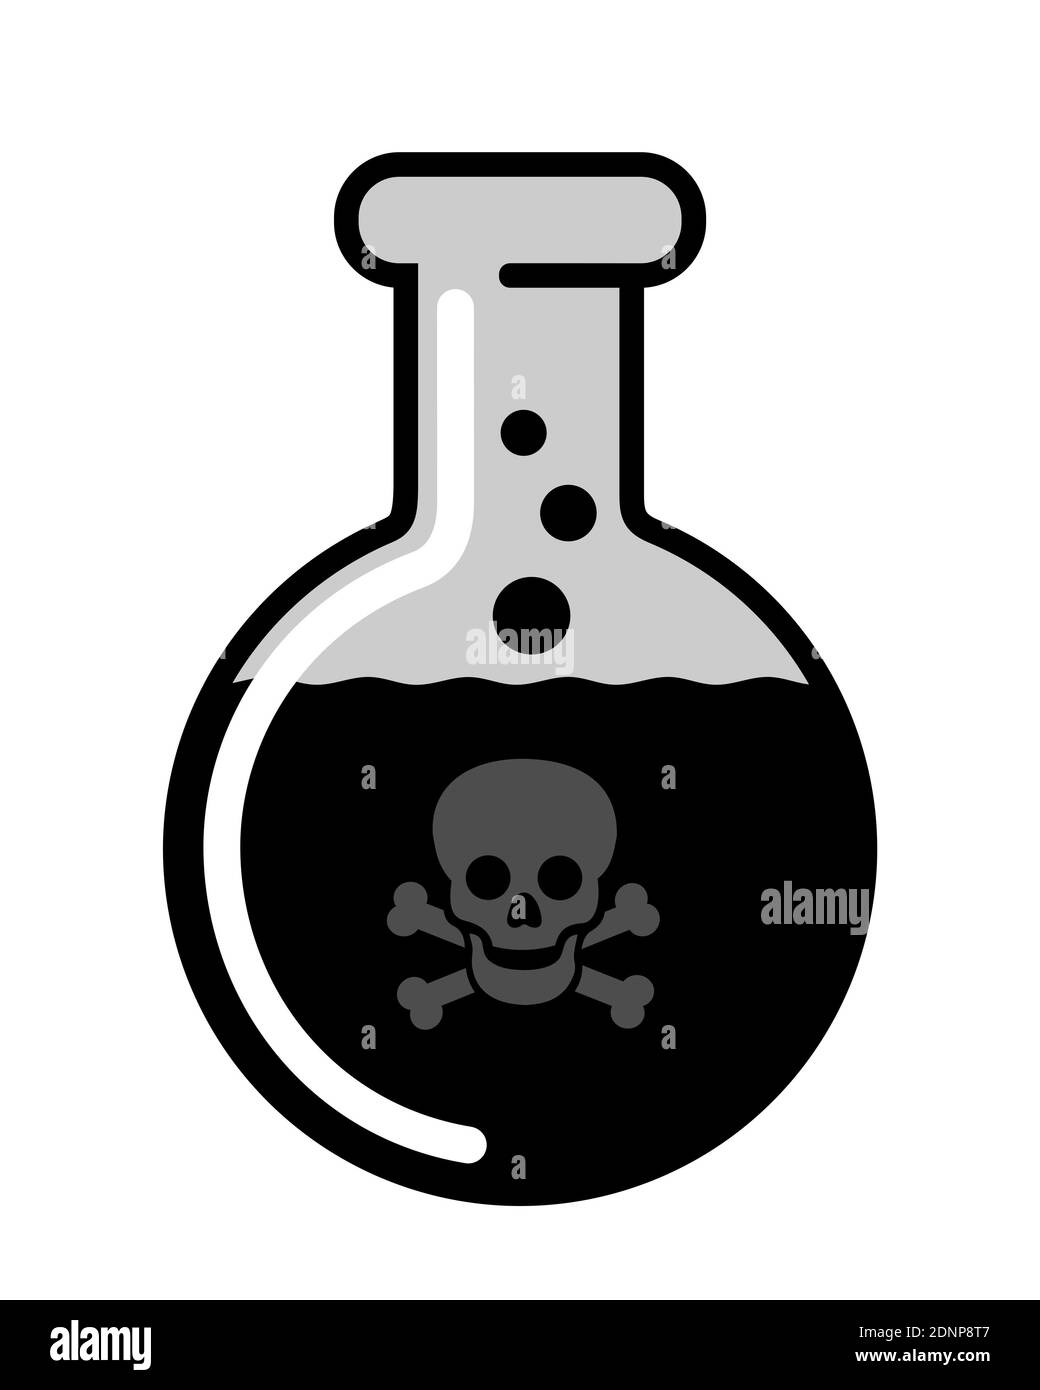 Liquide noir comme poison toxique danegrous, toxique et mortel - la substance cause la mort mortelle après avoir bu. Illustration vectorielle isolée sur blanc. Banque D'Images